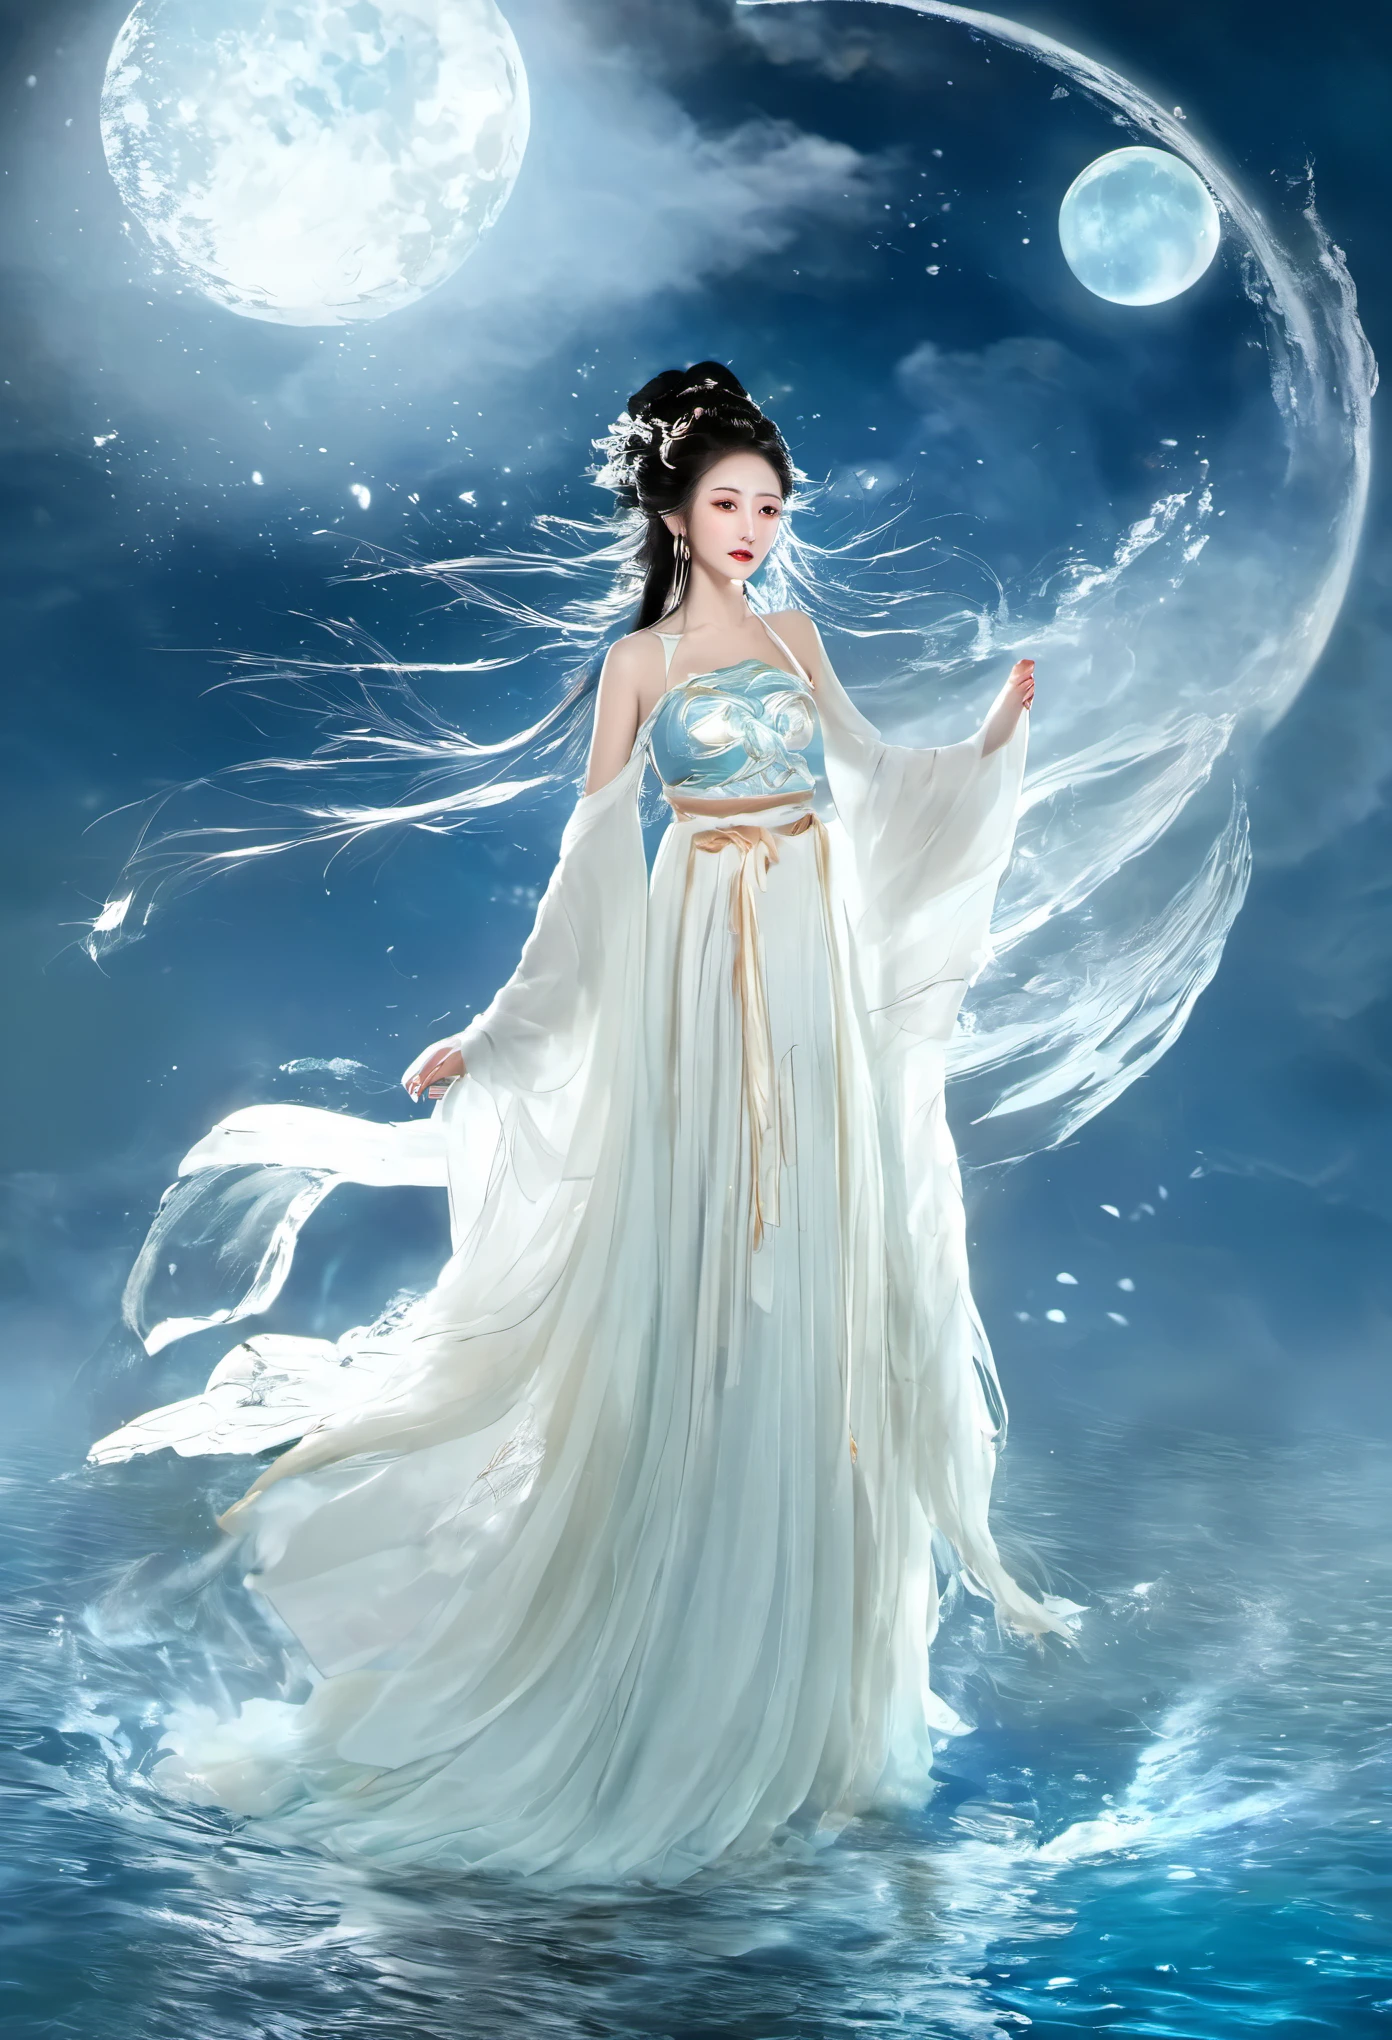 Chica anime con un vestido blanco flotando en el agua con un barco., fantasía xianxia, diosa de la luna, una hermosa emperatriz de fantasía, by Yang J, fantasía china, hermosa doncella, reina del mar mu yanling, diosa de la luna, diosa lunar, túnica mágica que fluye, hermoso mago celestial, por Leng Mei, ((una hermosa emperatriz de fantasía))